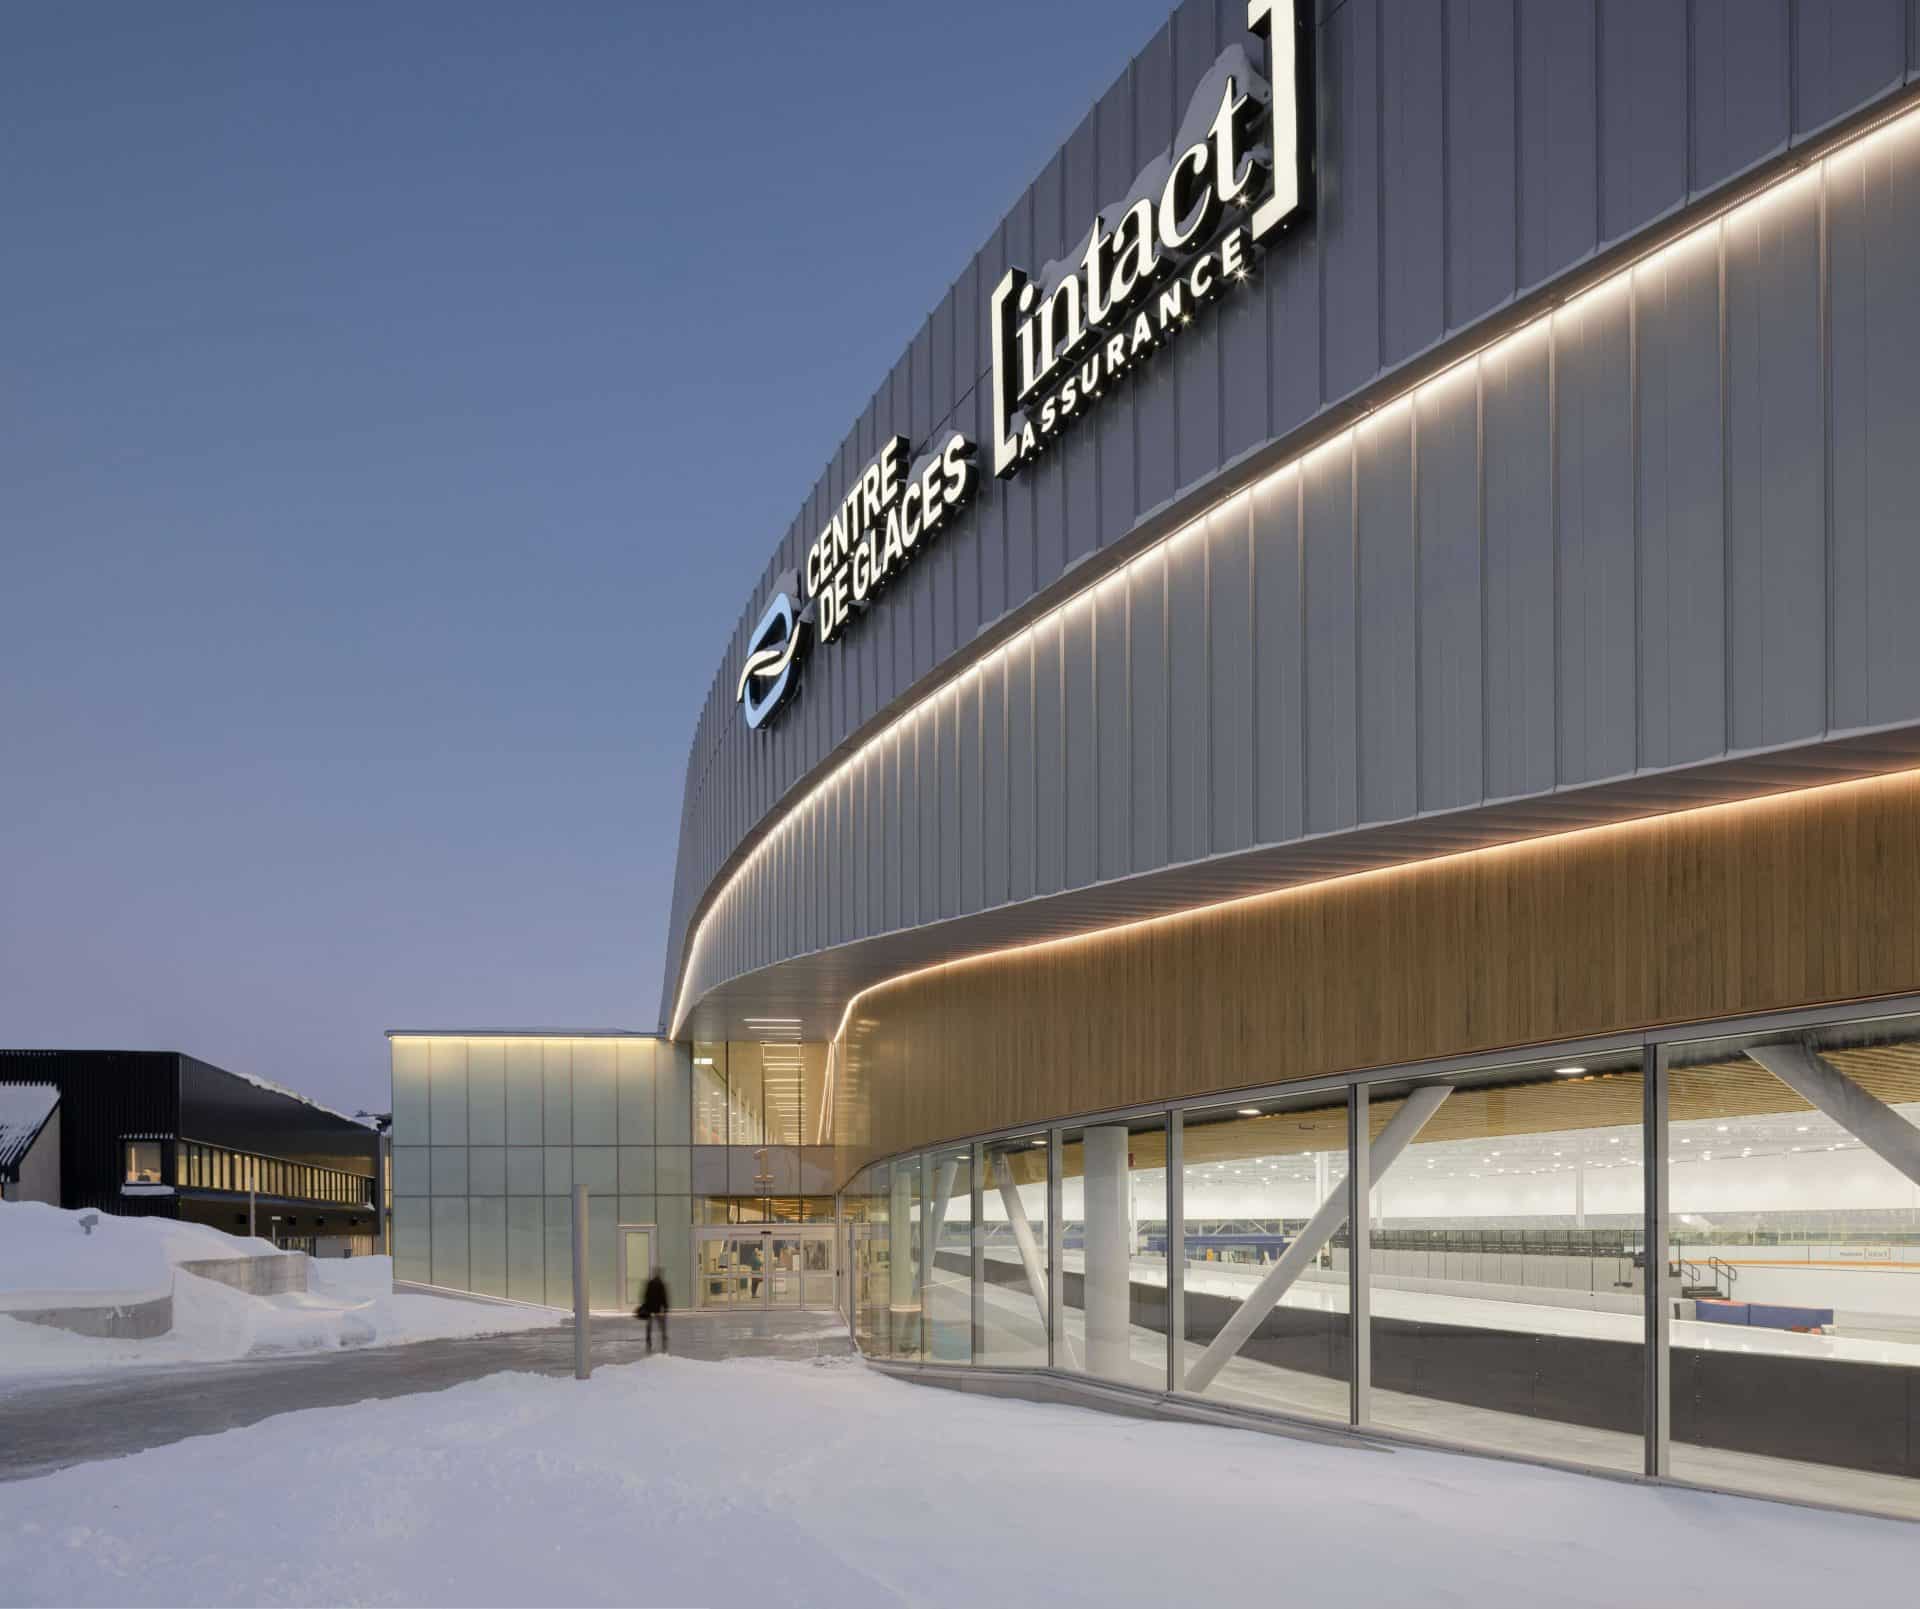 Centre-de-glaces-Quebec-Branding-Lemay-Architecture-Design-StephaneGroleau-0298-B-2